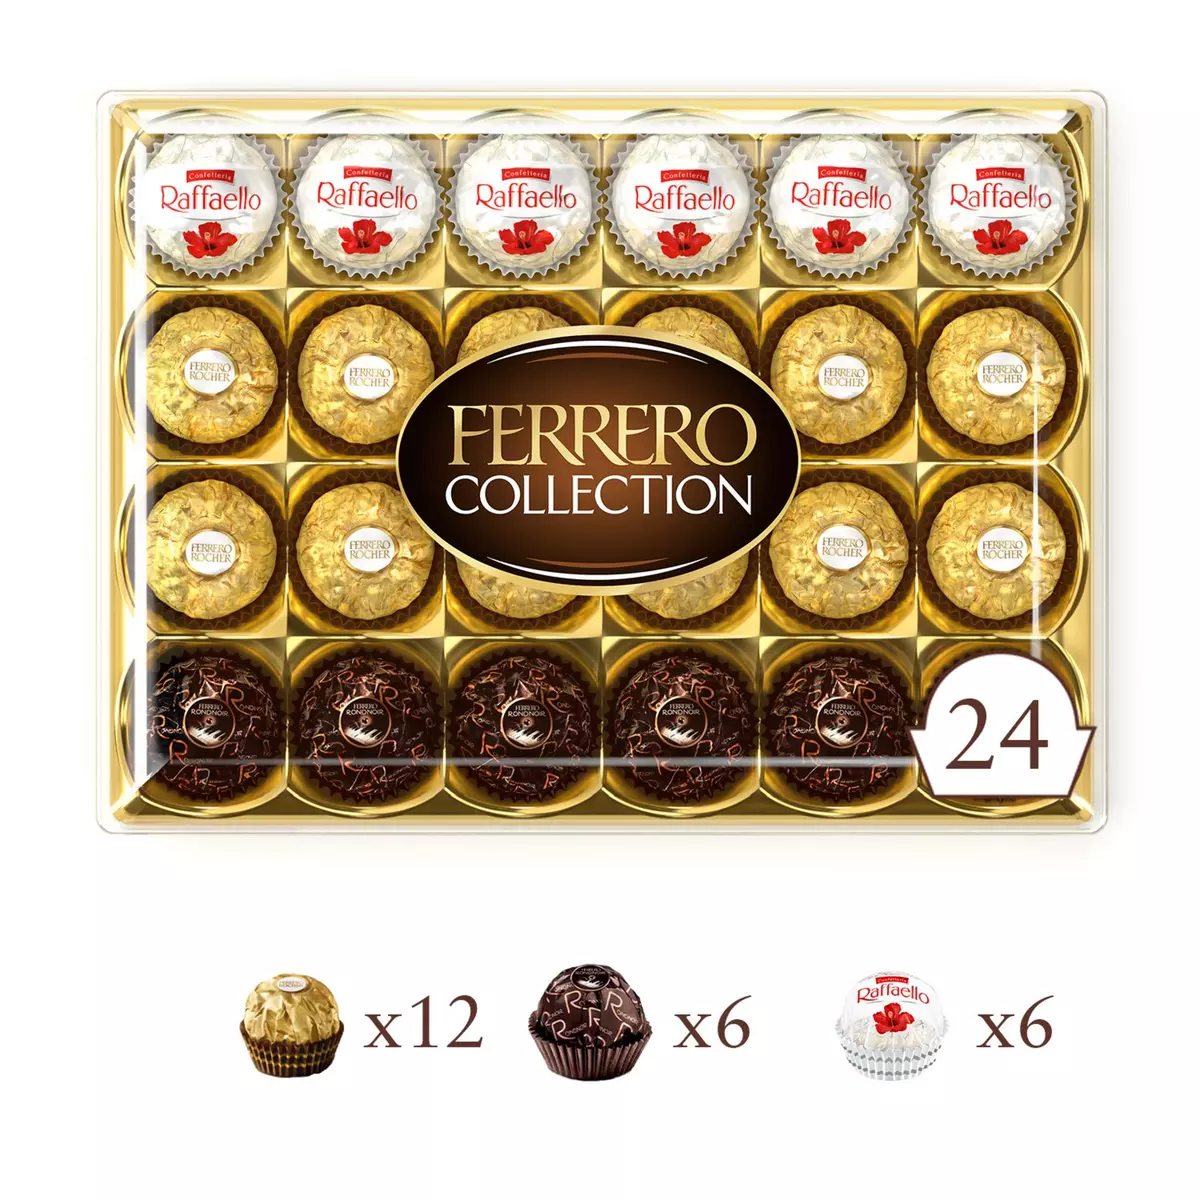 FERRERO Collection Assortiment de chocolats 24 pièces 269g